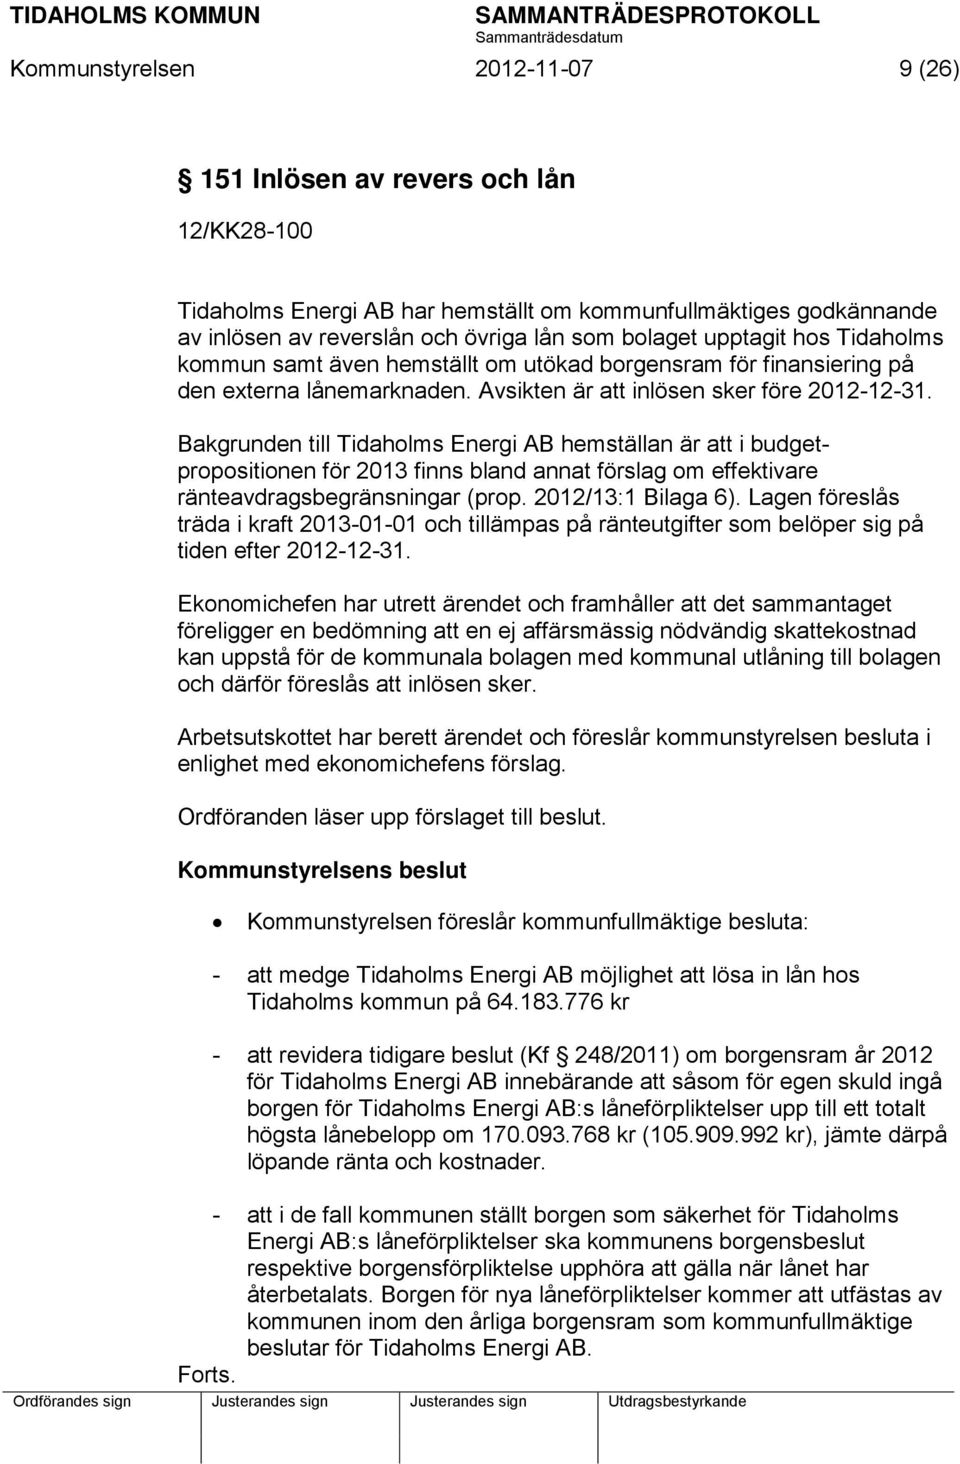 Bakgrunden till Tidaholms Energi AB hemställan är att i budgetpropositionen för 2013 finns bland annat förslag om effektivare ränteavdragsbegränsningar (prop. 2012/13:1 Bilaga 6).